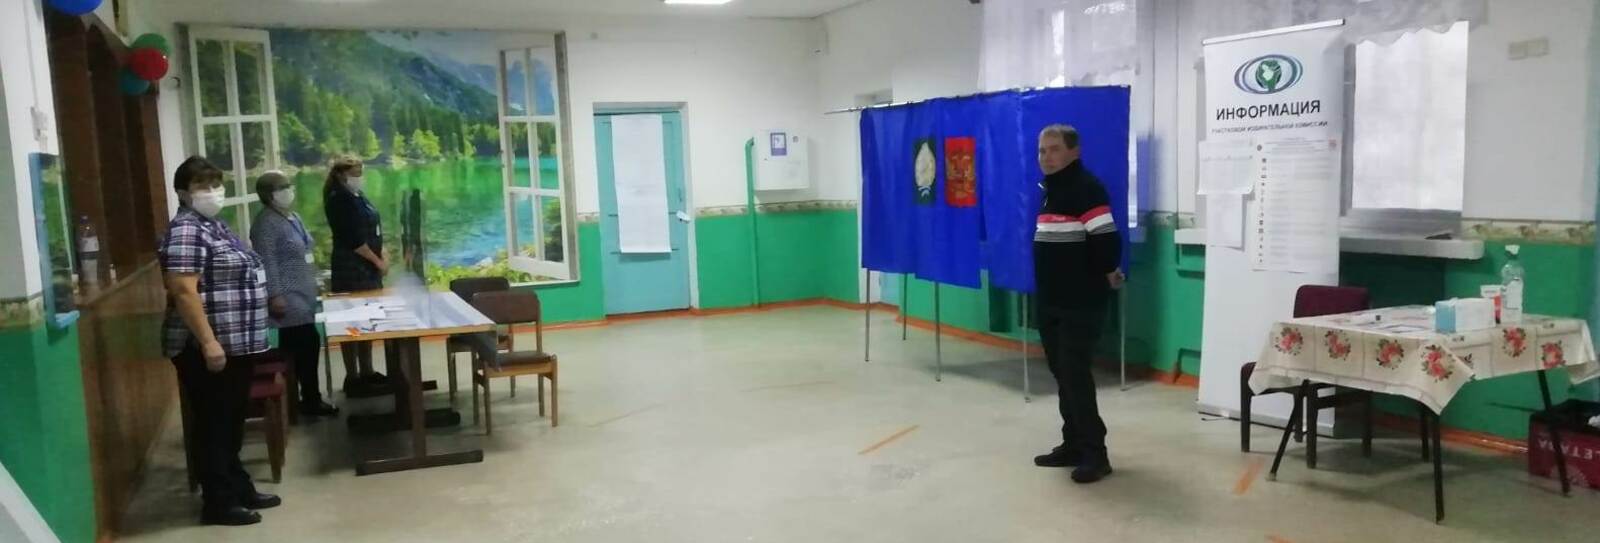 Стартовал финальный день голосования на выборах в Госдуму